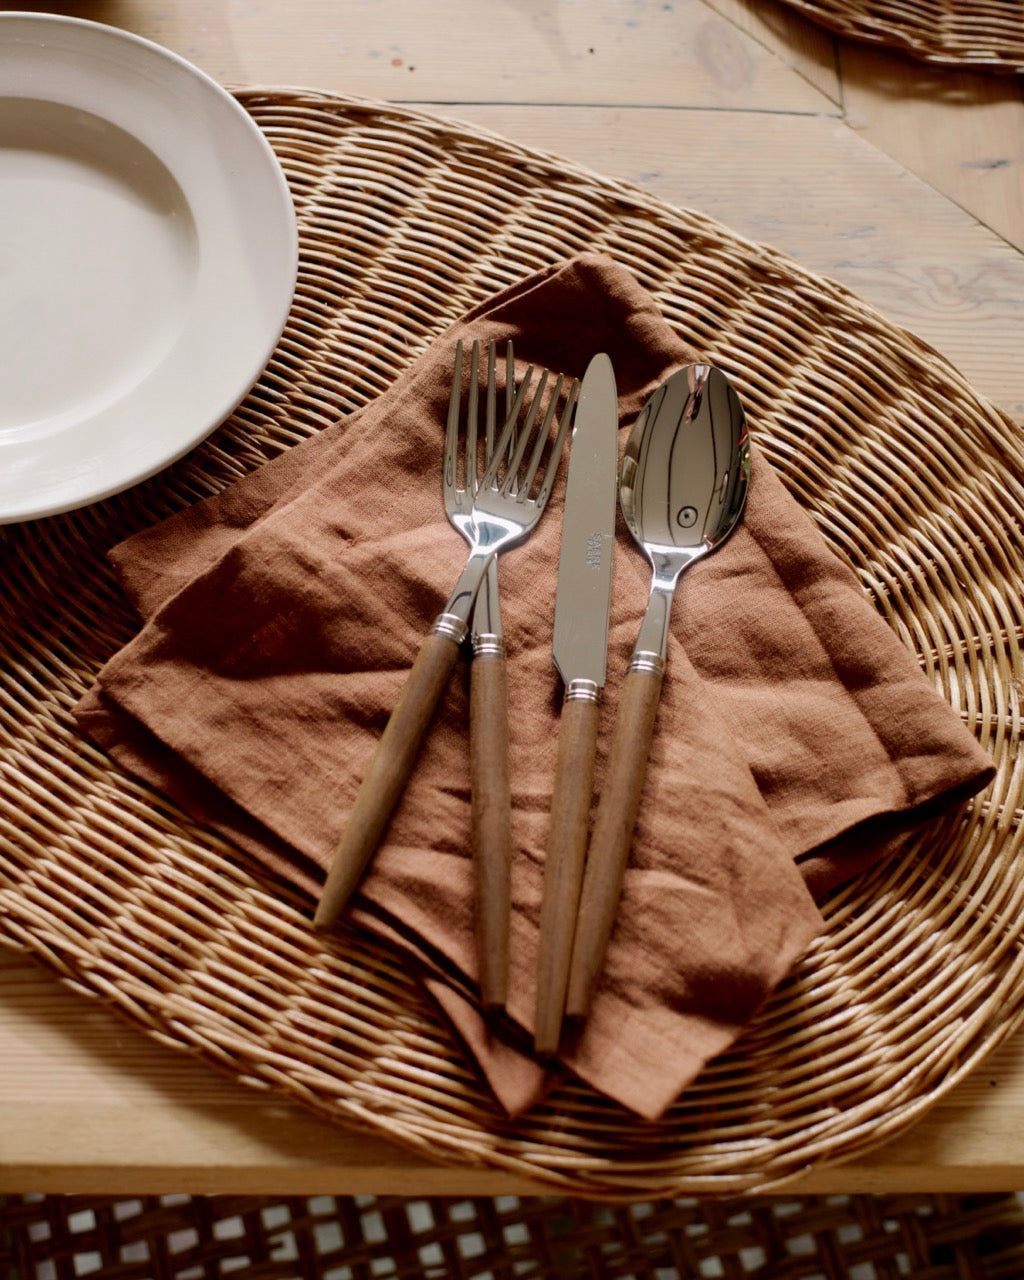 Accoya Wood Cutlery Set